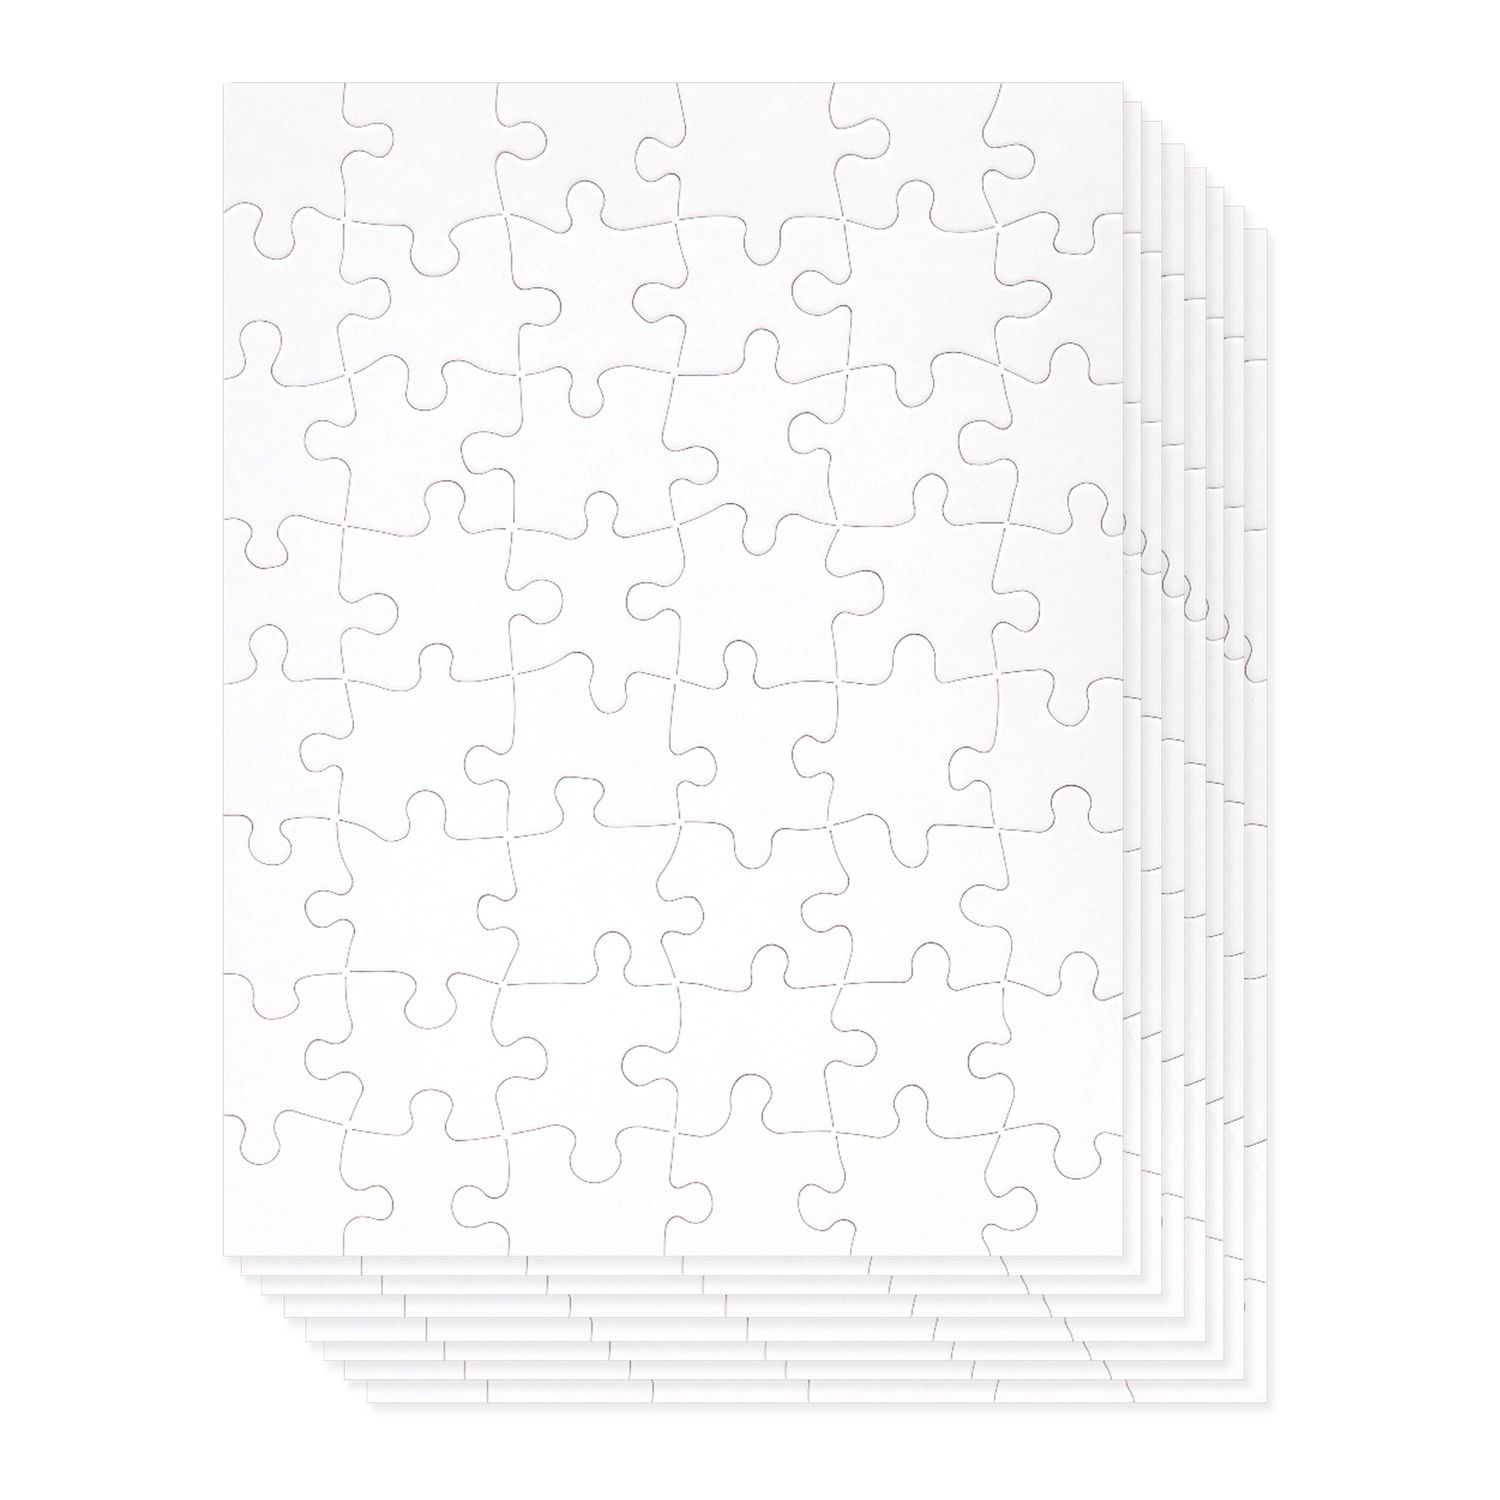 Beginner Jigsaw Puzzles